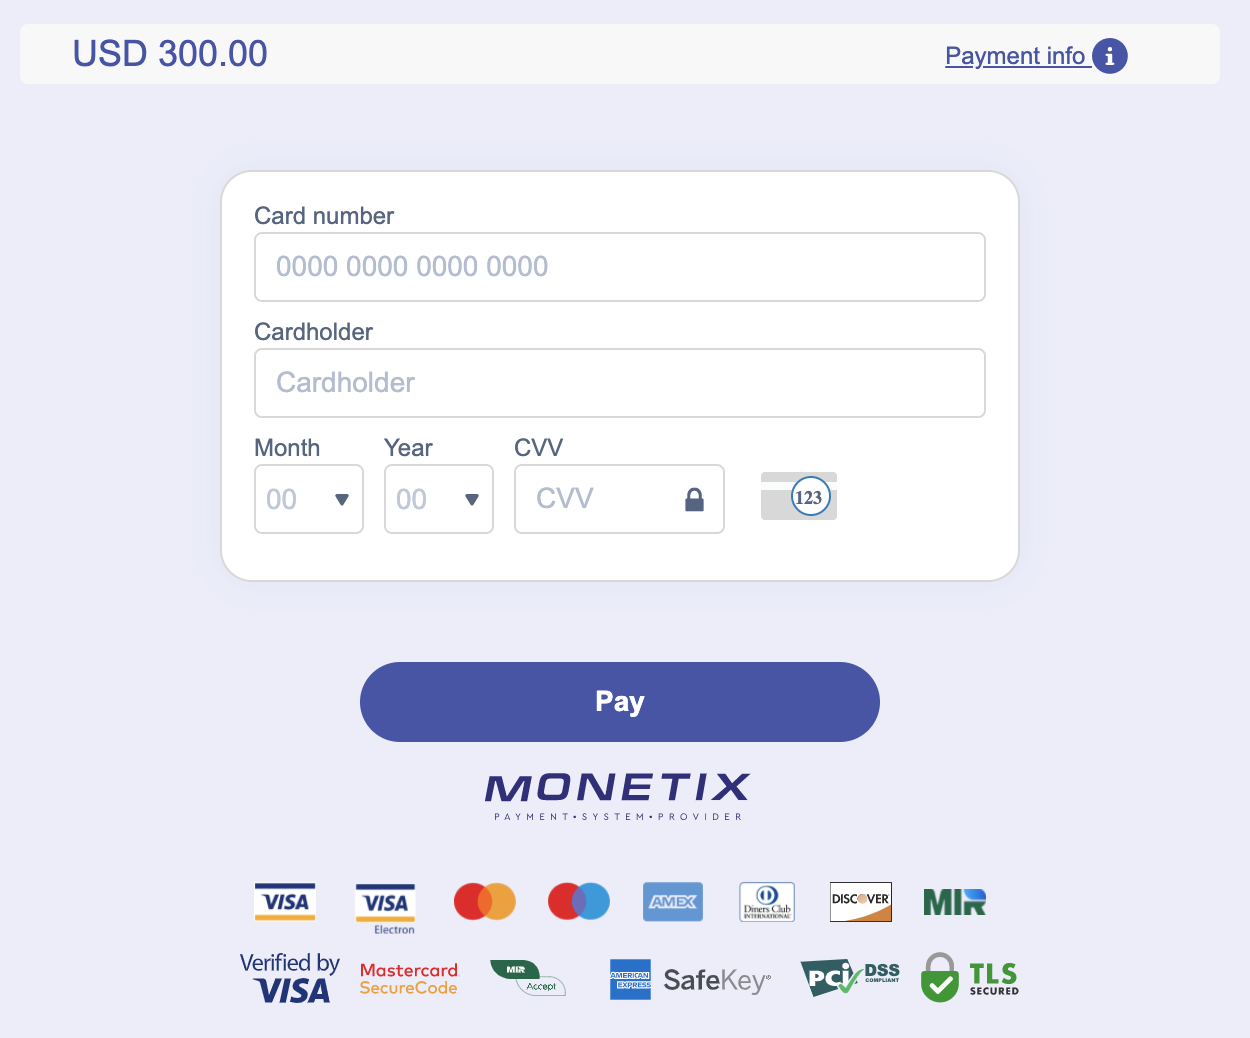 Vkládejte peníze do Quotex prostřednictvím thajských bankovních karet (Visa / MasterCard), banky (Bank of Thailand, Thajské QR bankovnictví), elektronických plateb (Perfect Money, Promptpay) a kryptoměn